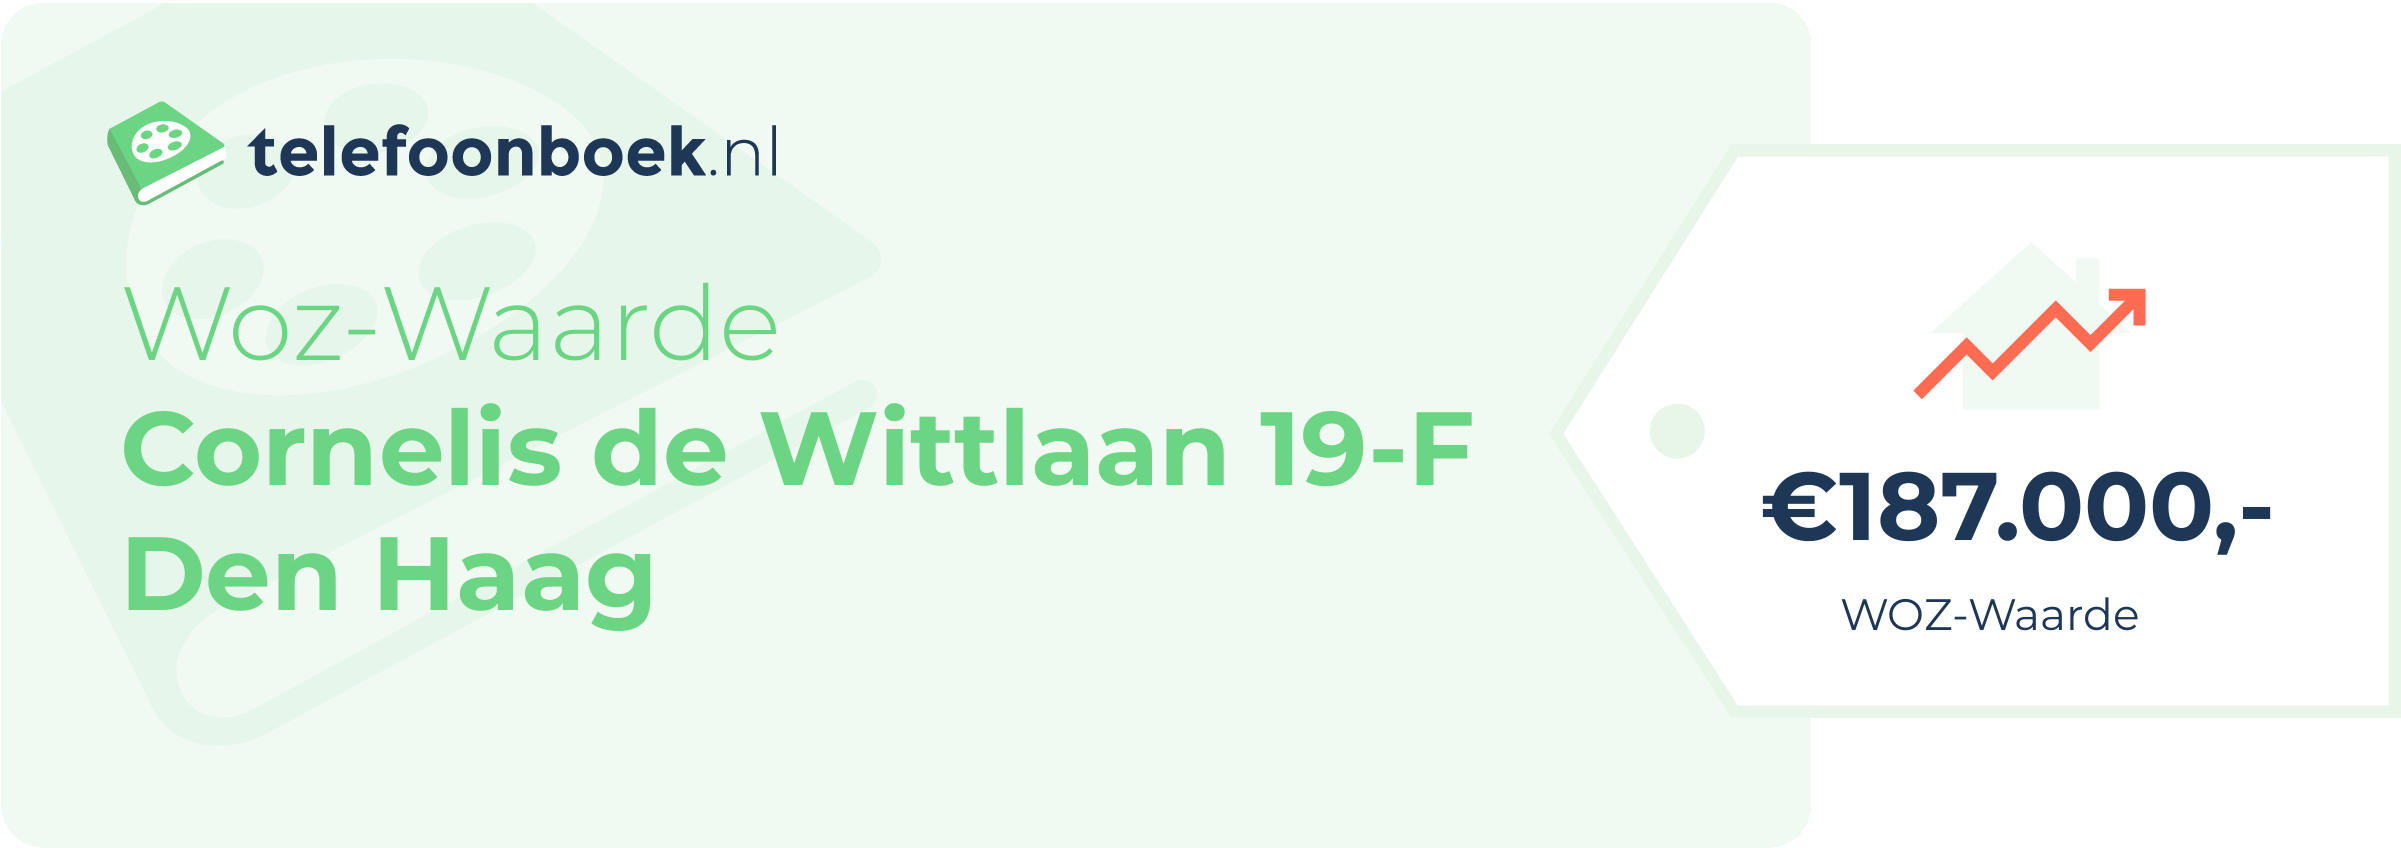 WOZ-waarde Cornelis De Wittlaan 19-F Den Haag